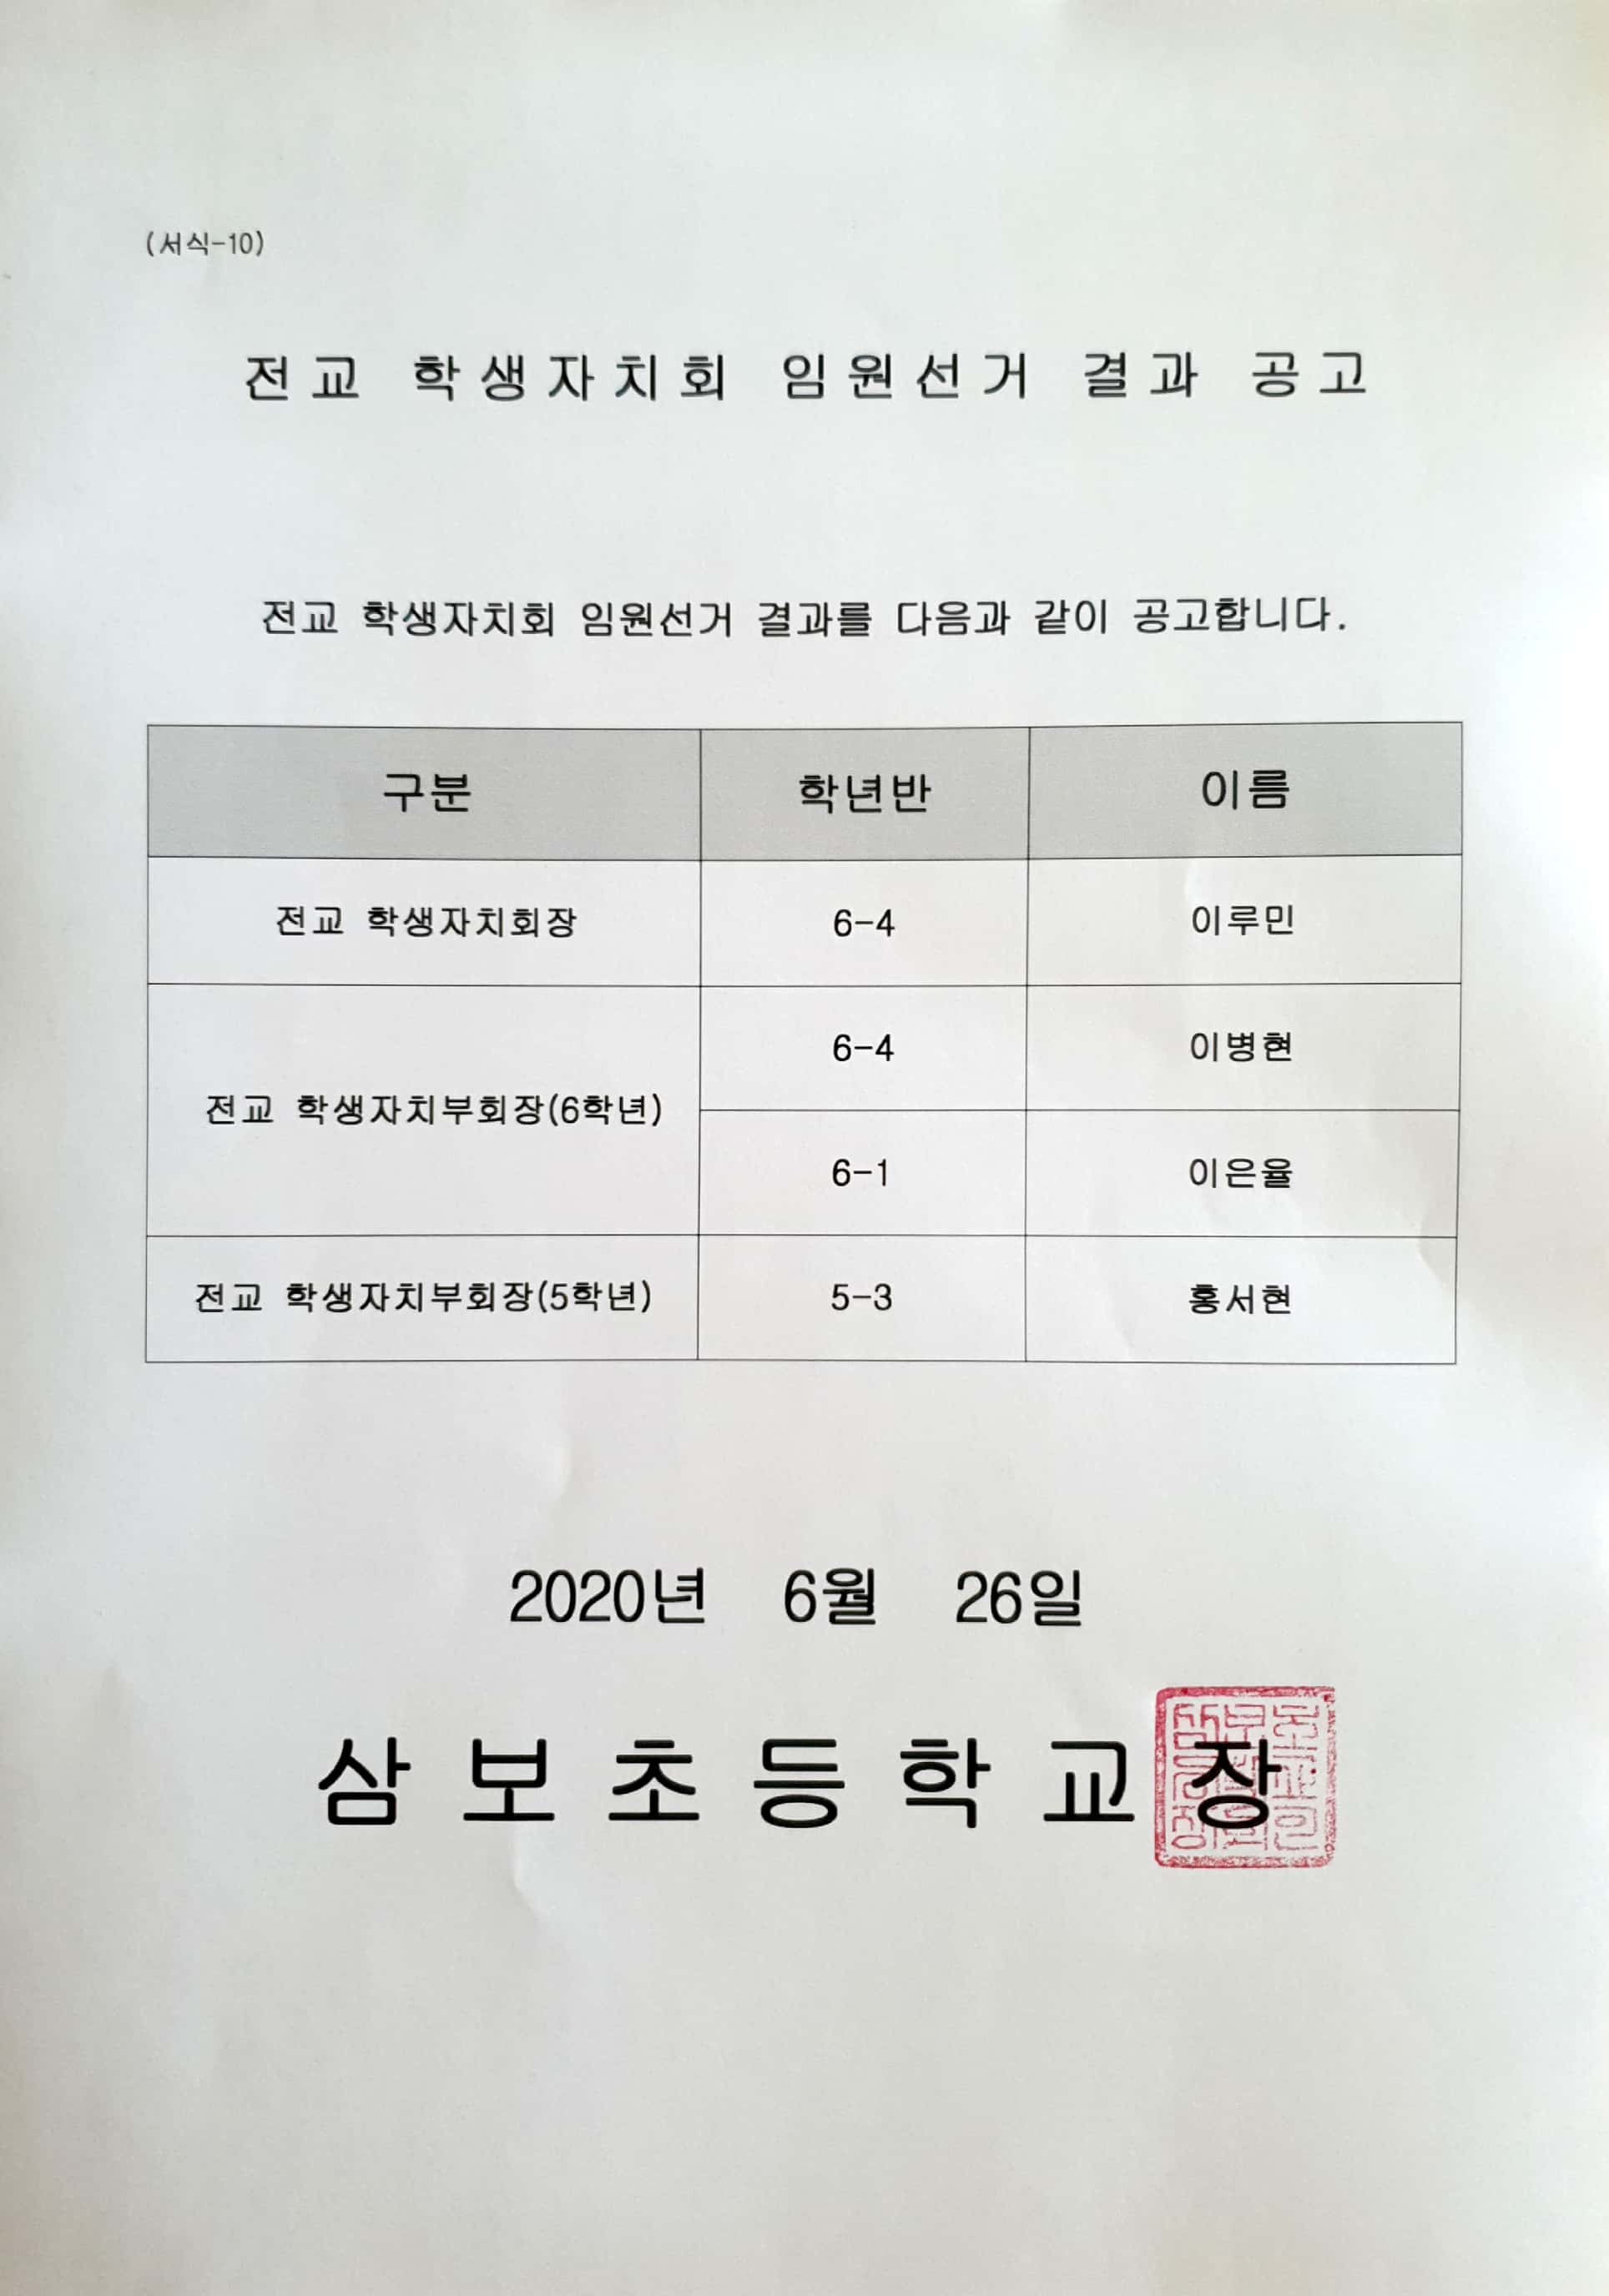 (서식-10)전교 학생자치회 임원선거 결과 공고